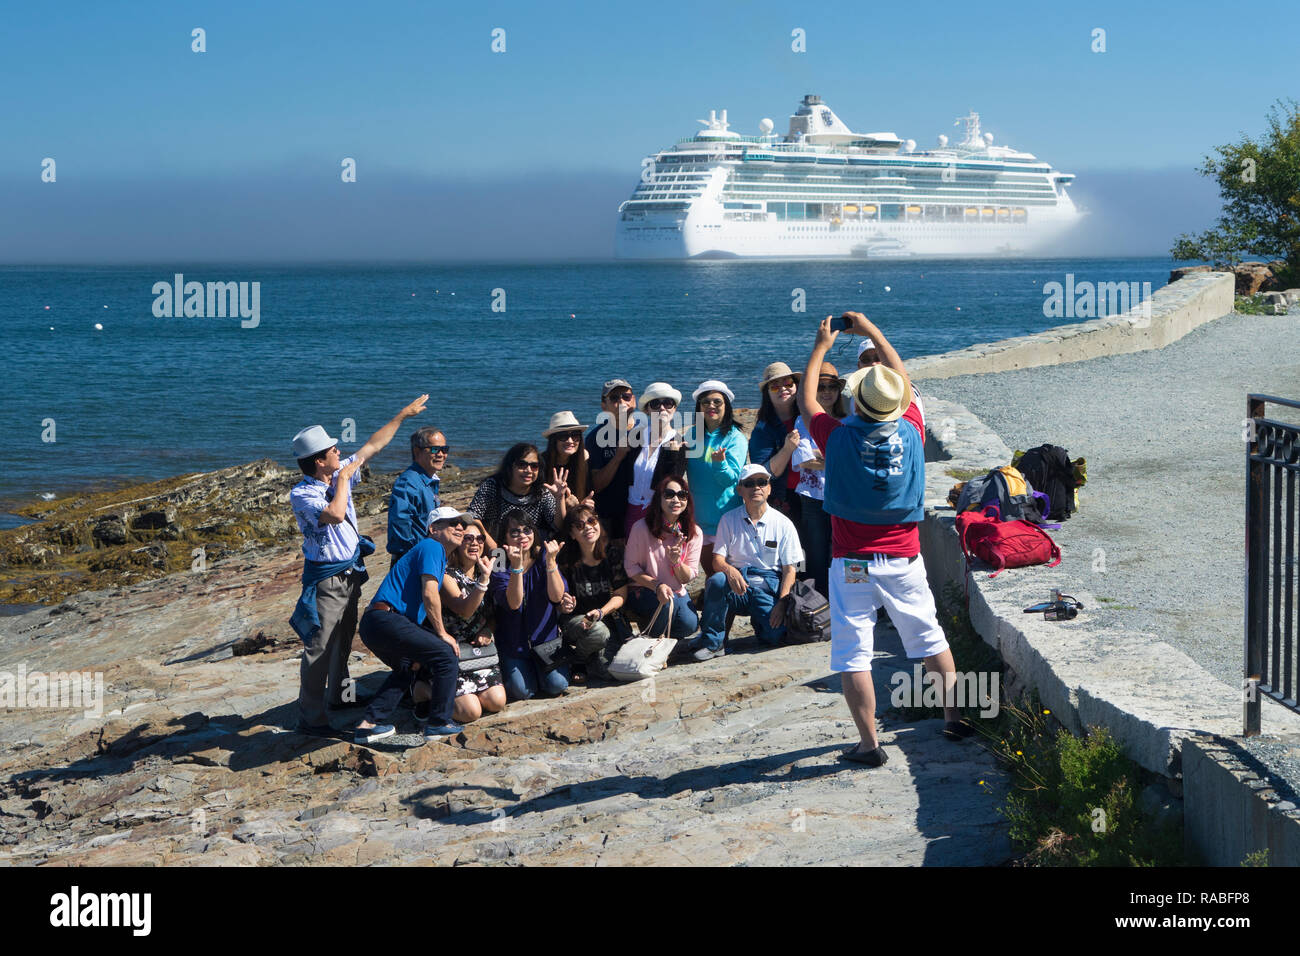 Les touristes asiatiques de prendre une photo de groupe avec un bateau de croisière dans l'arrière-plan, Bar Harbor, Maine, USA. Banque D'Images